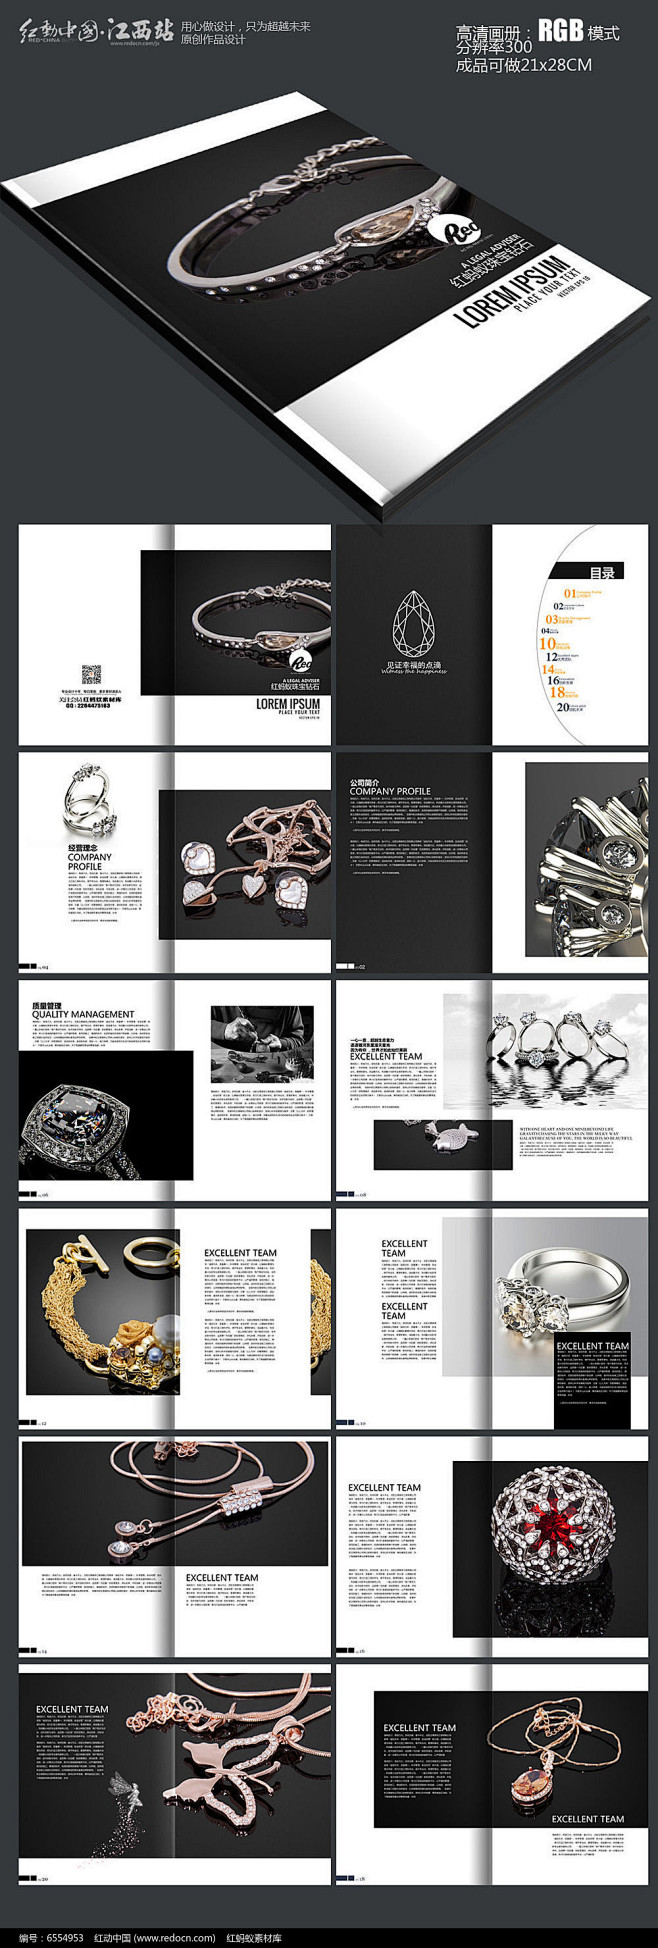 高端黑色珠宝宣传画册设计模版PSD素材下...